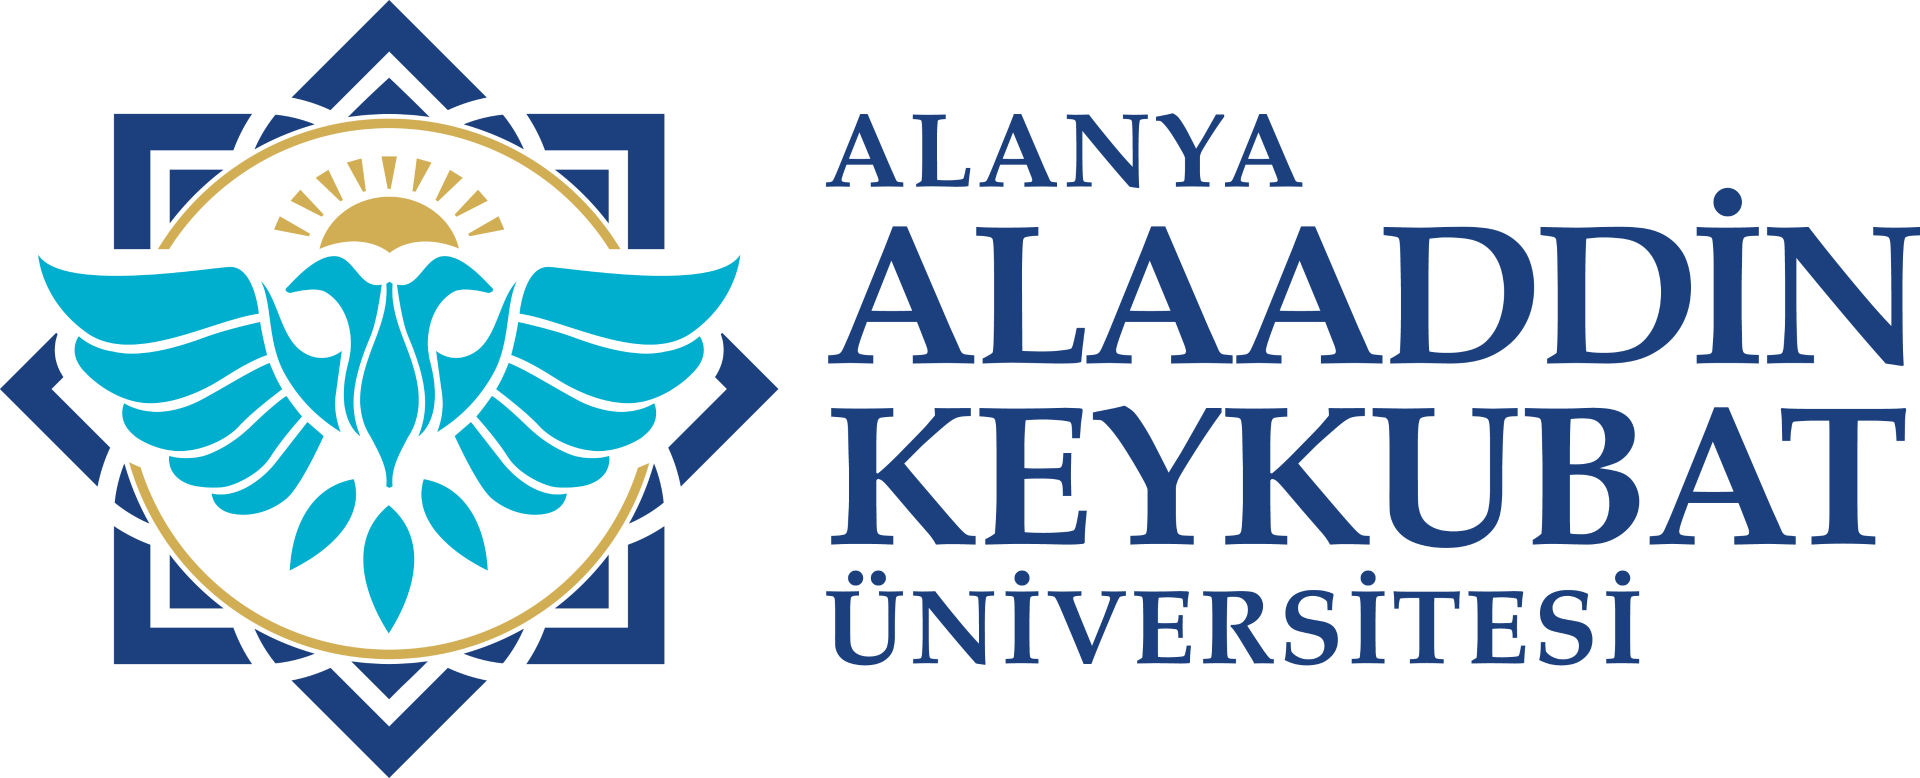 alku-yatay-logo-rgb